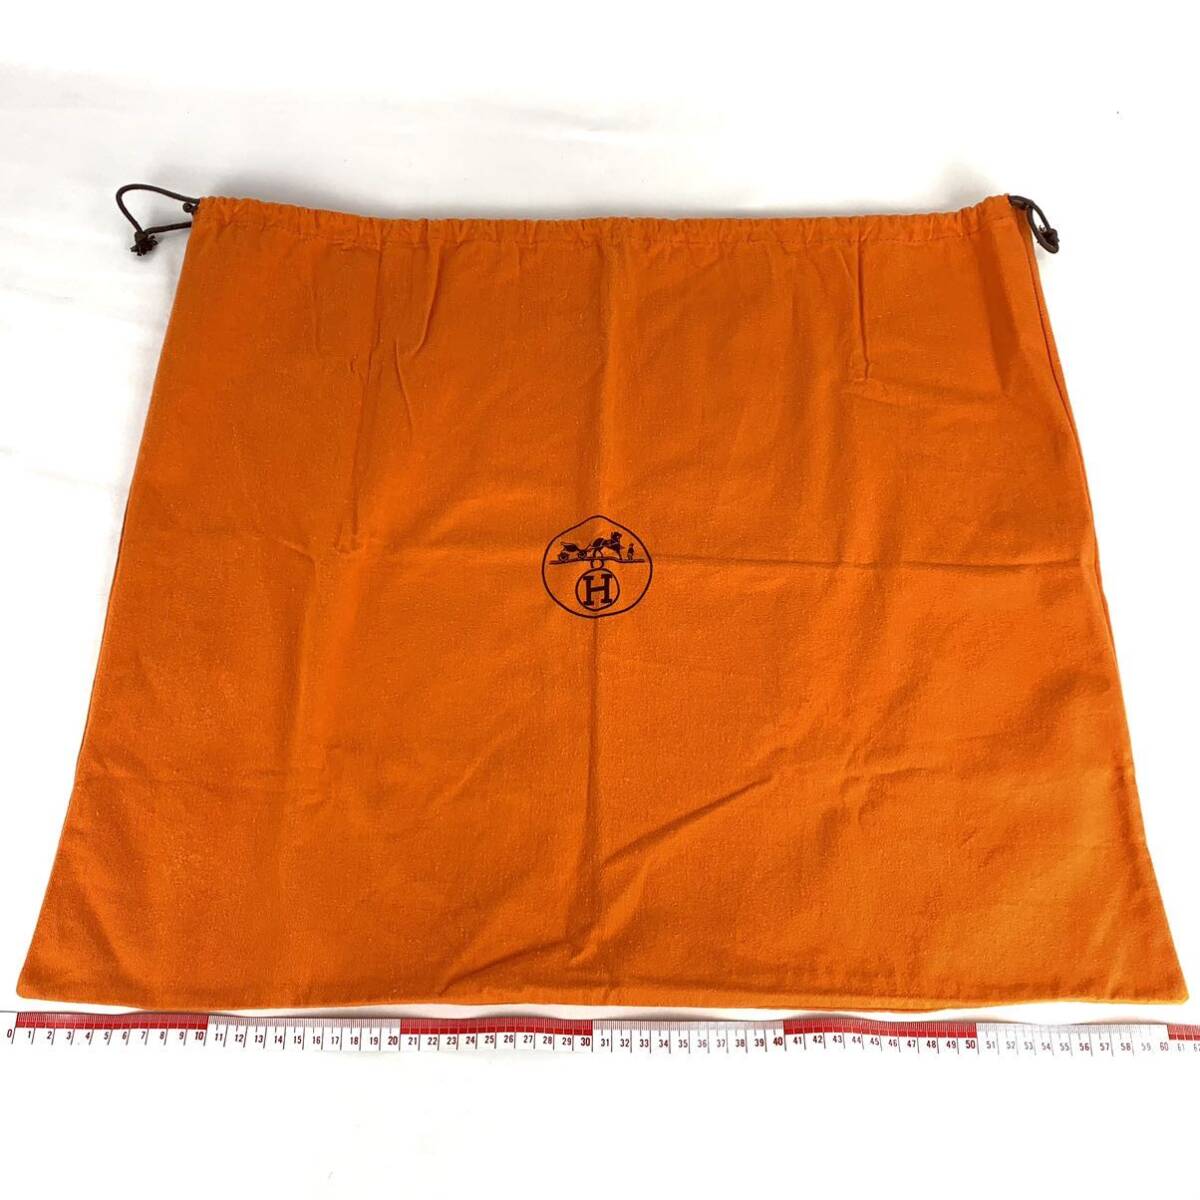 HERMES エルメス 保存袋 61×52 大型 特大 旧型 巾着袋 付属品 バッグ用 袋 オレンジ_画像1